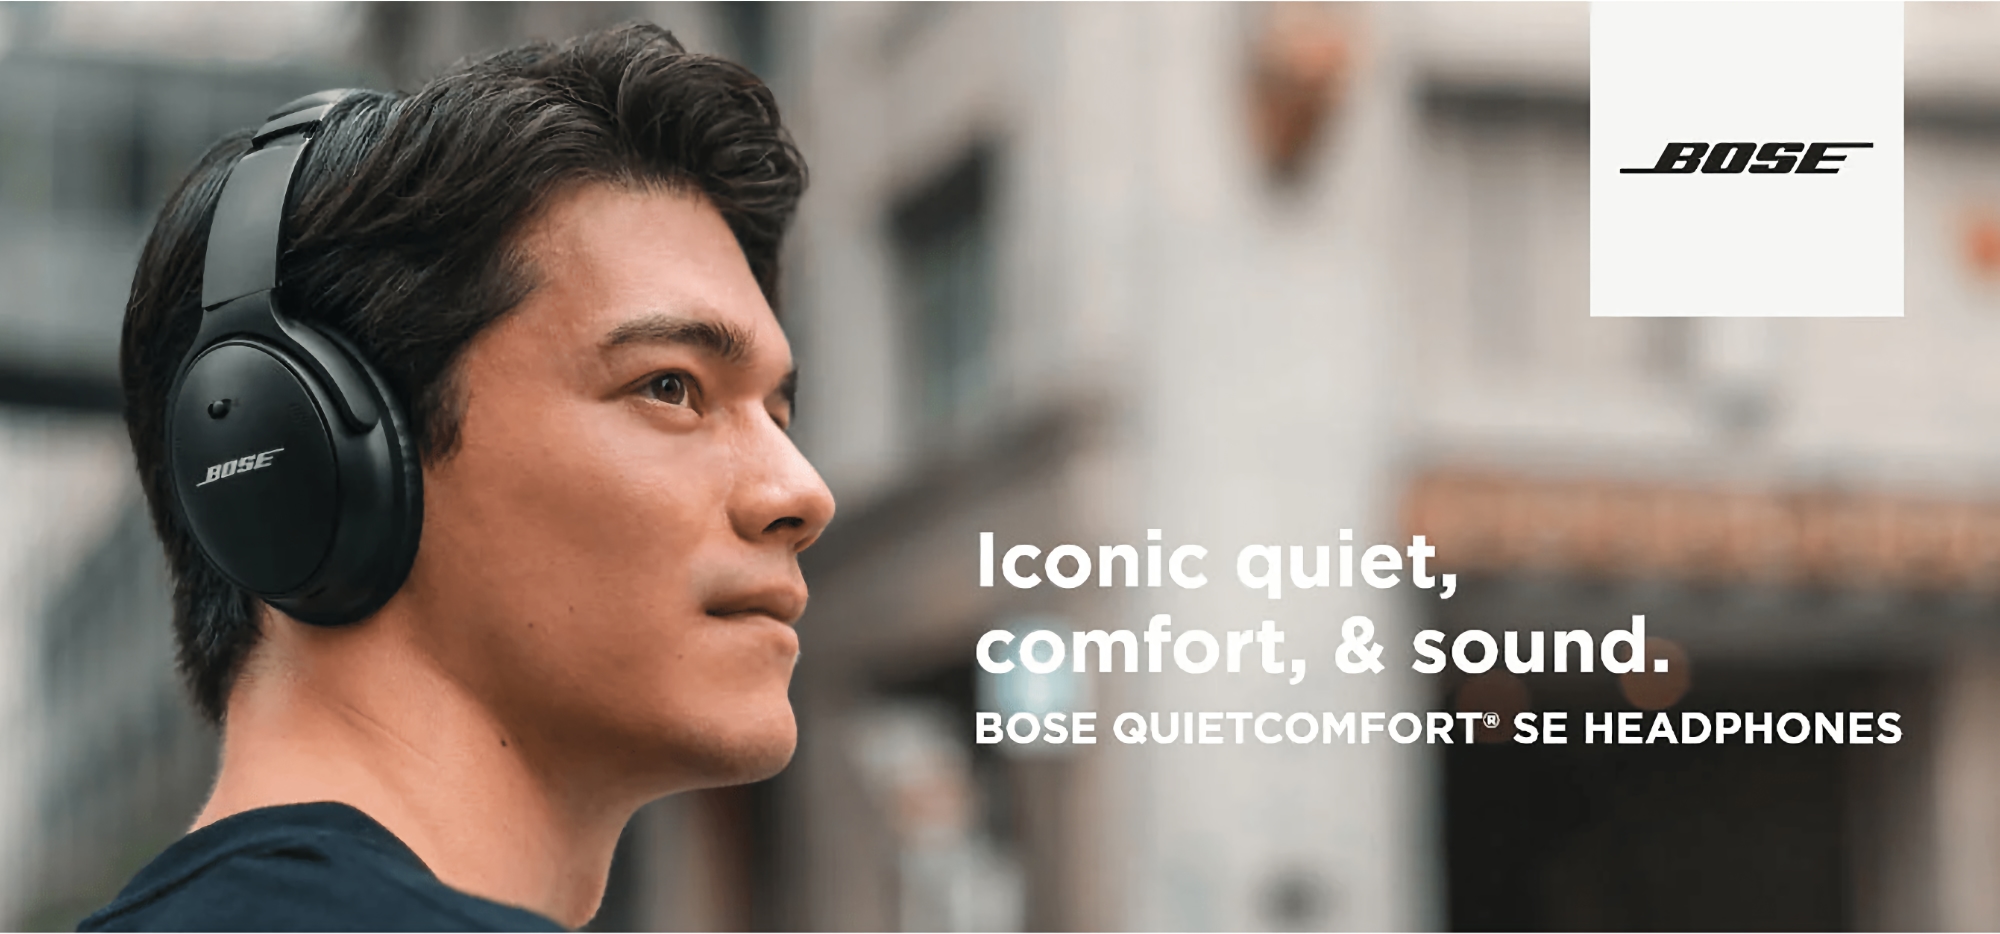 Bose QuietComfort SE sur Amazon : casque avec ANC et jusqu'à 24 heures d'autonomie avec une réduction de € 101